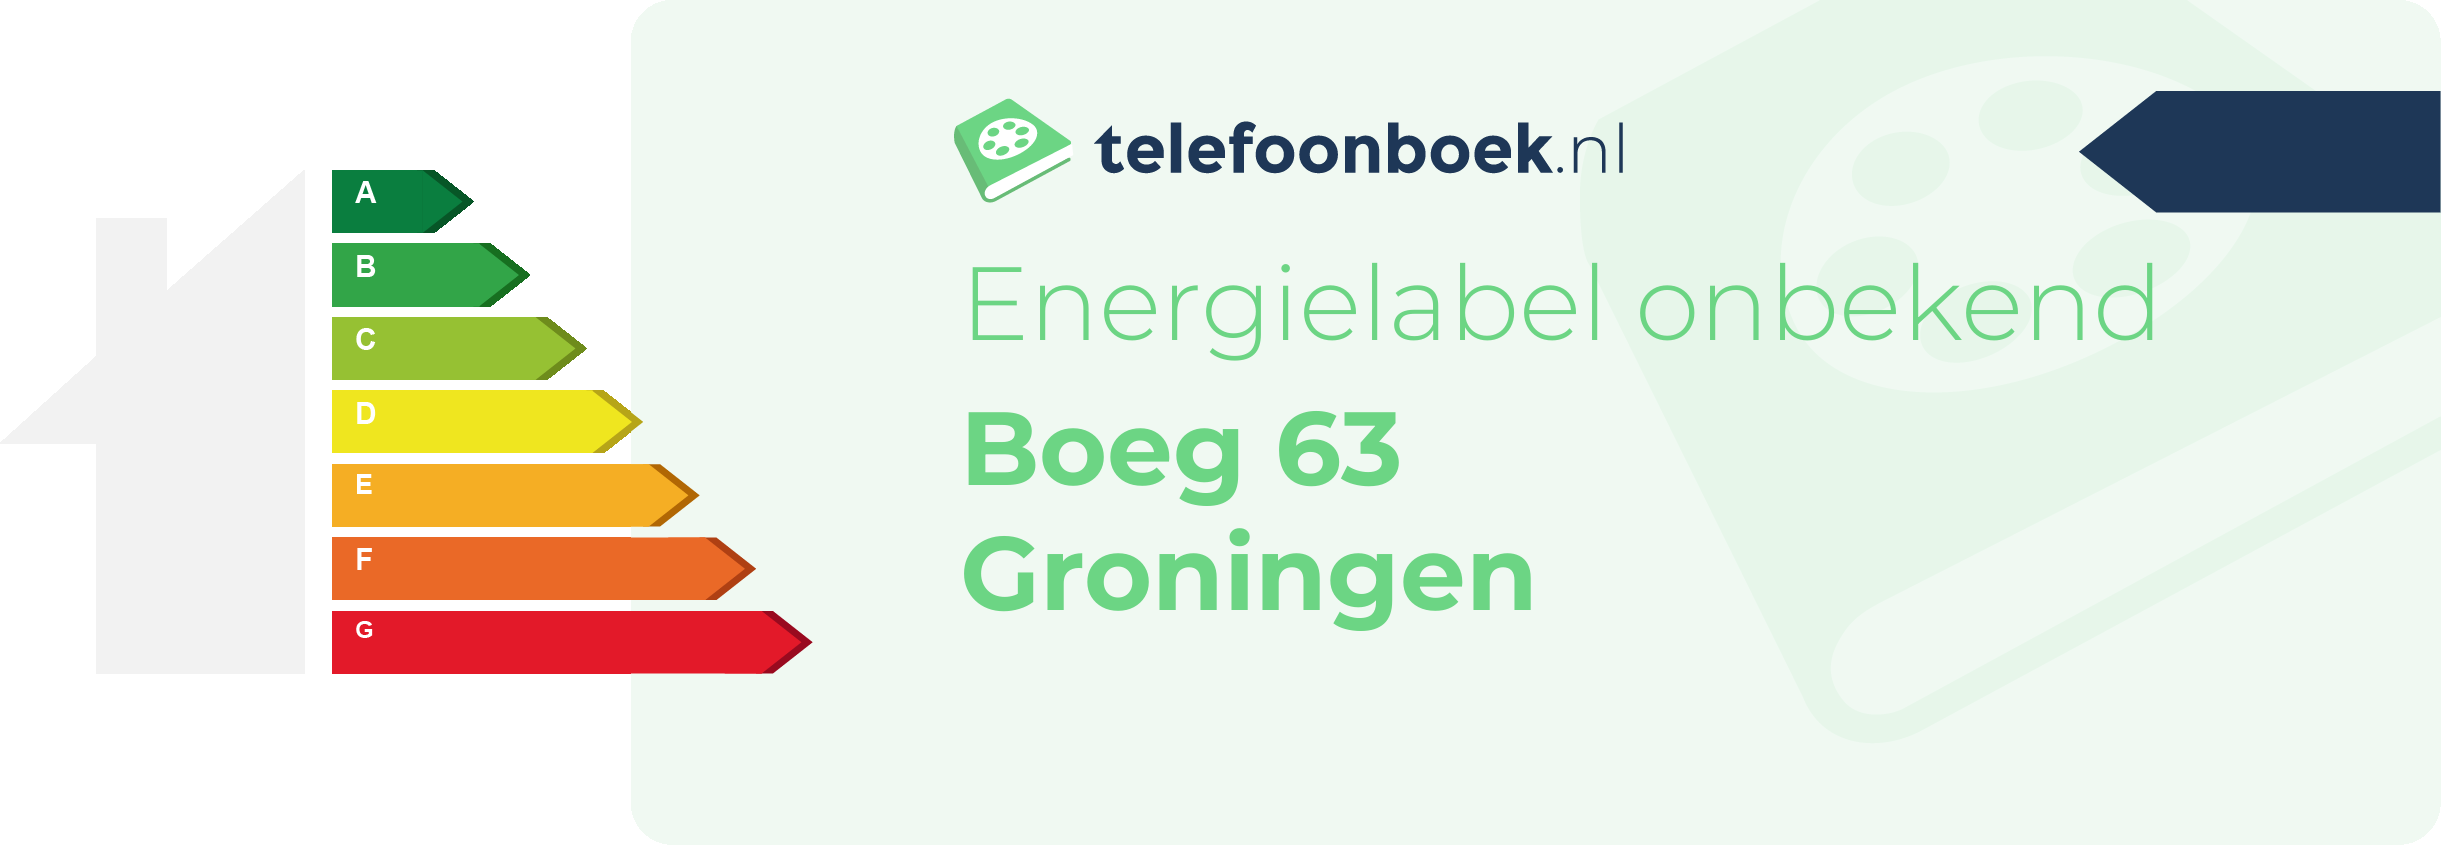 Energielabel Boeg 63 Groningen